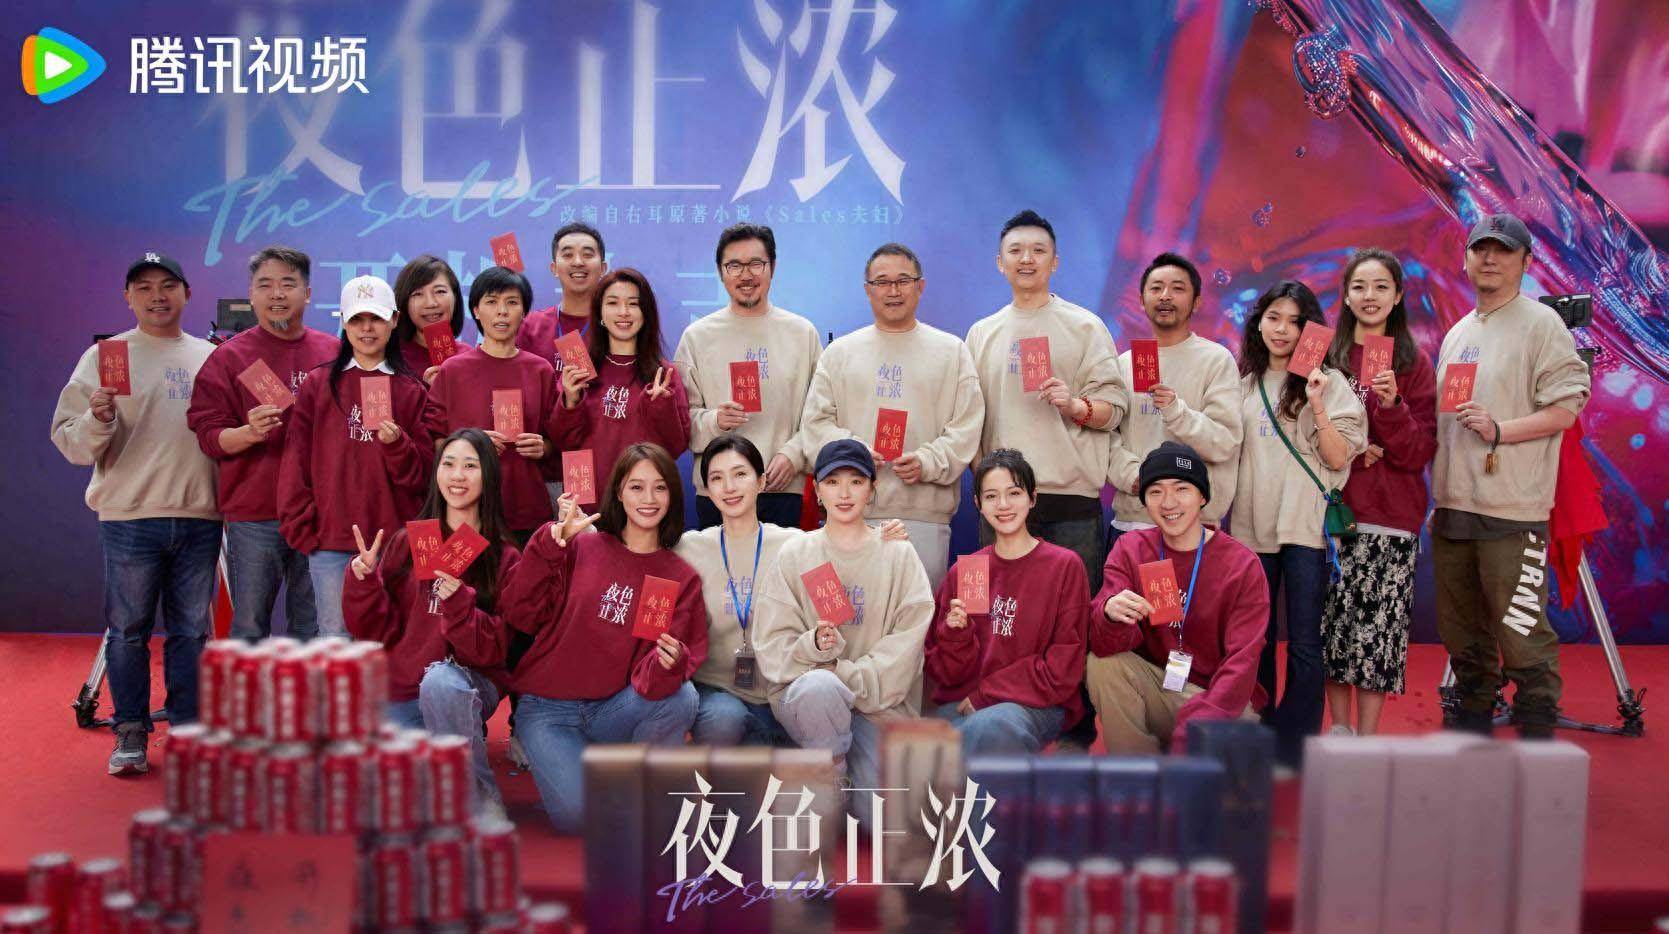 电影《夜色正浓》于1月9日在广州合利天德广场举行开机仪式